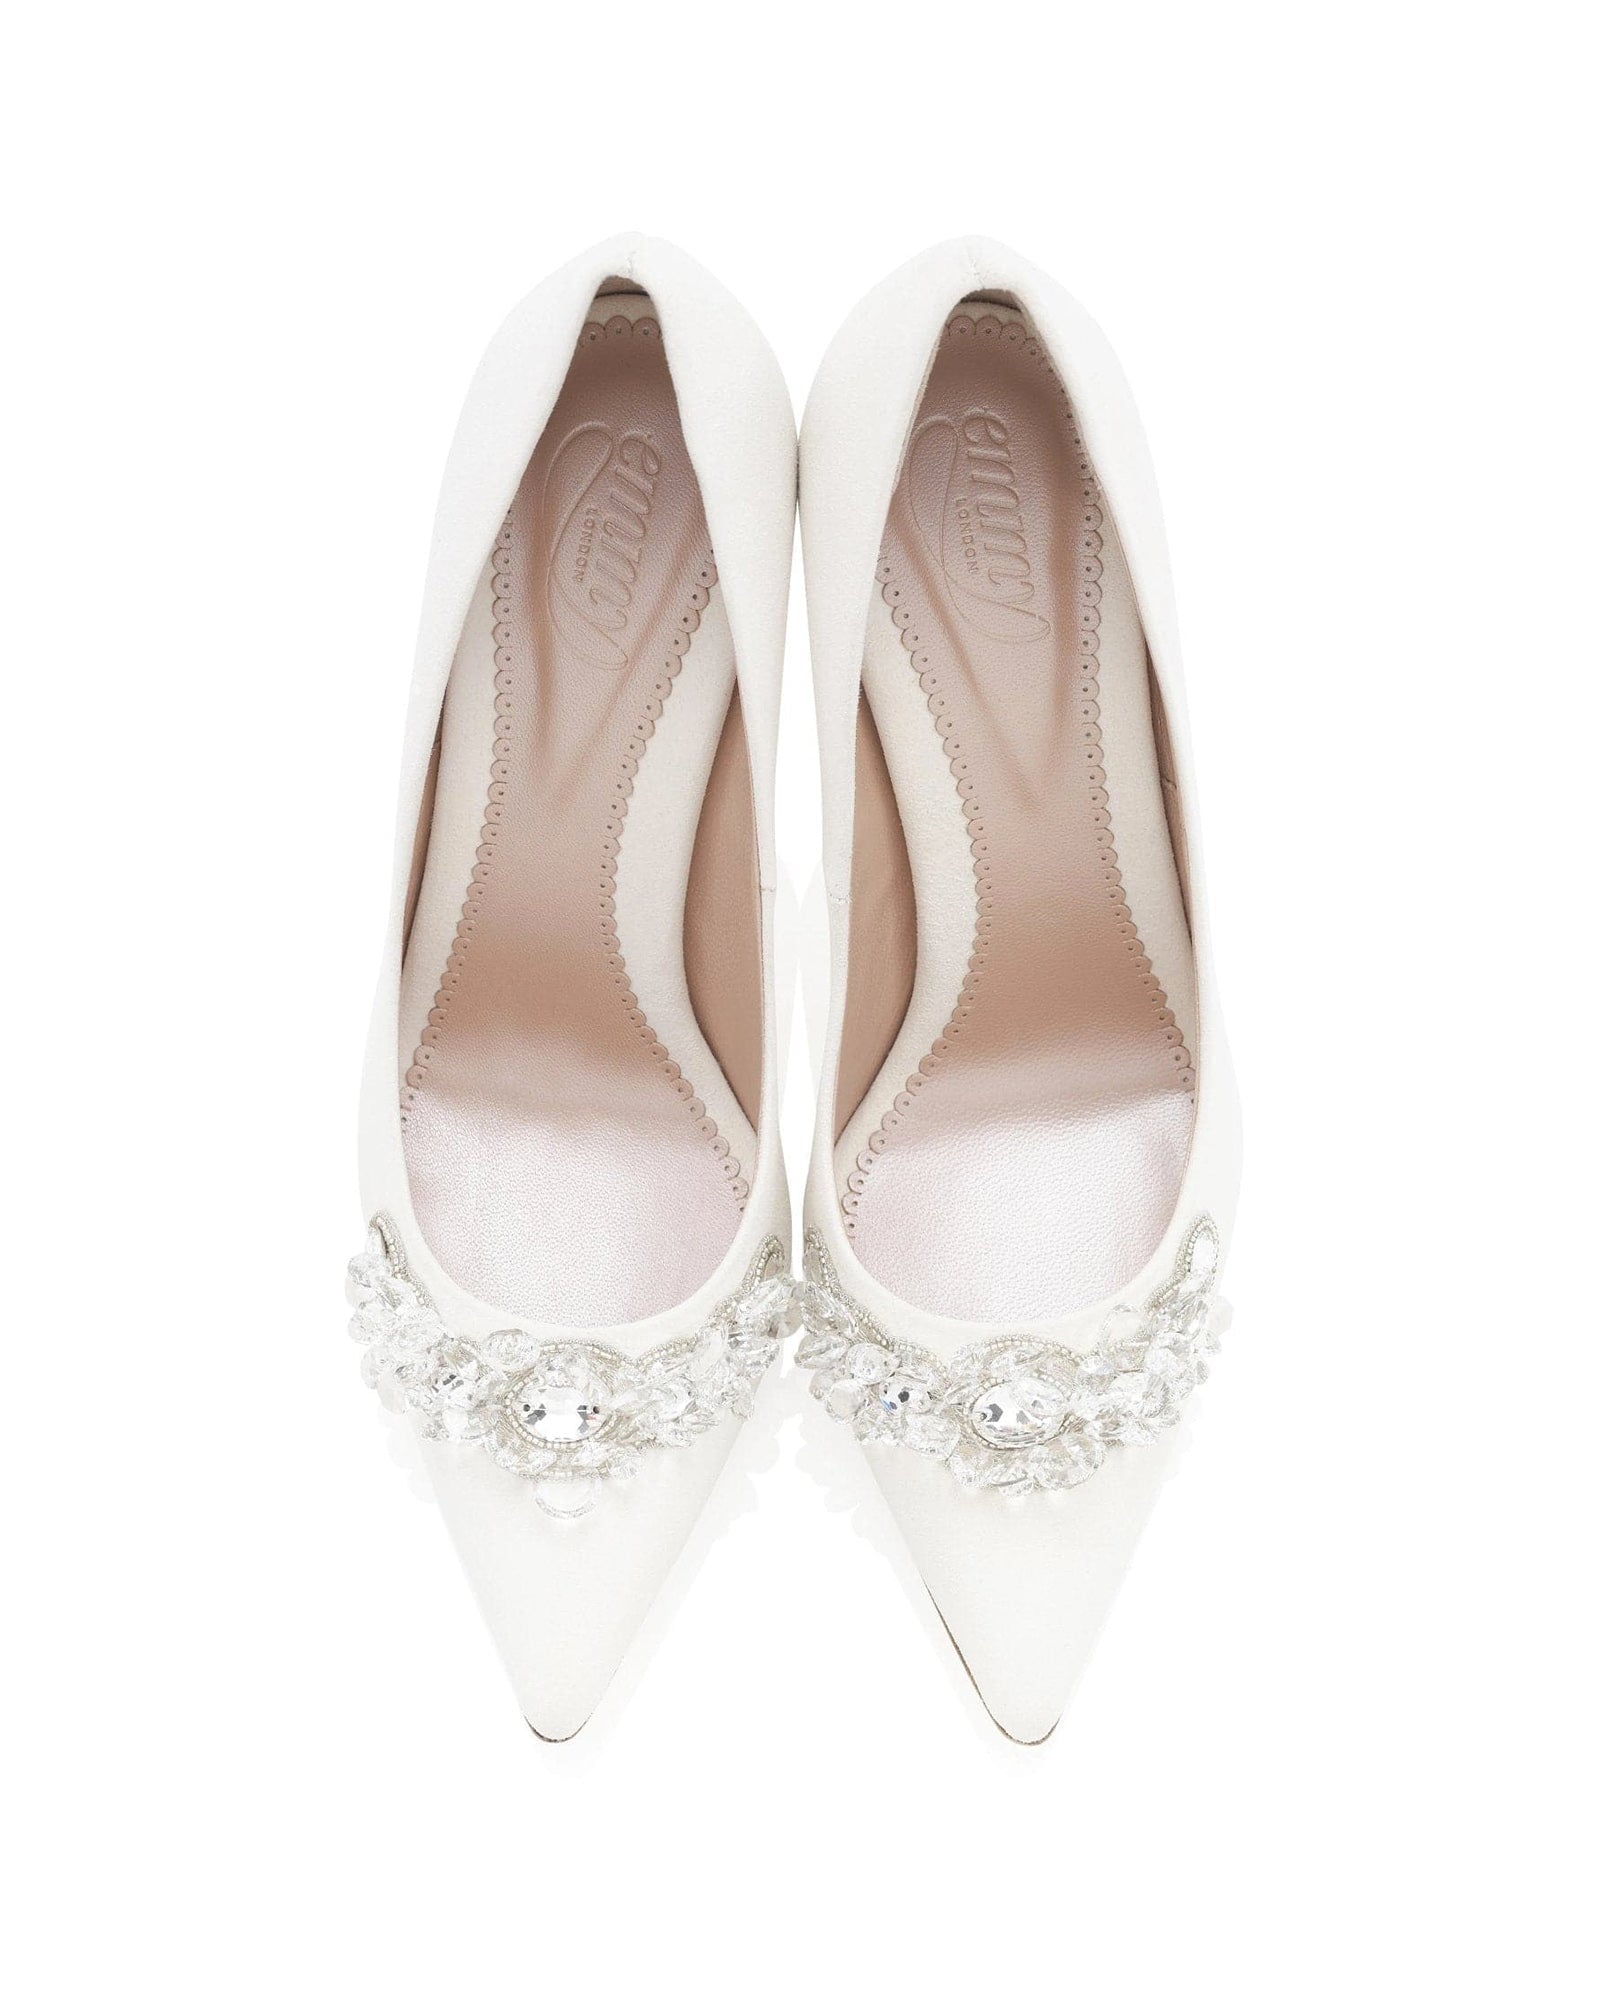 Sienna Bridal Shoe Embellished Wedding Shoes  image